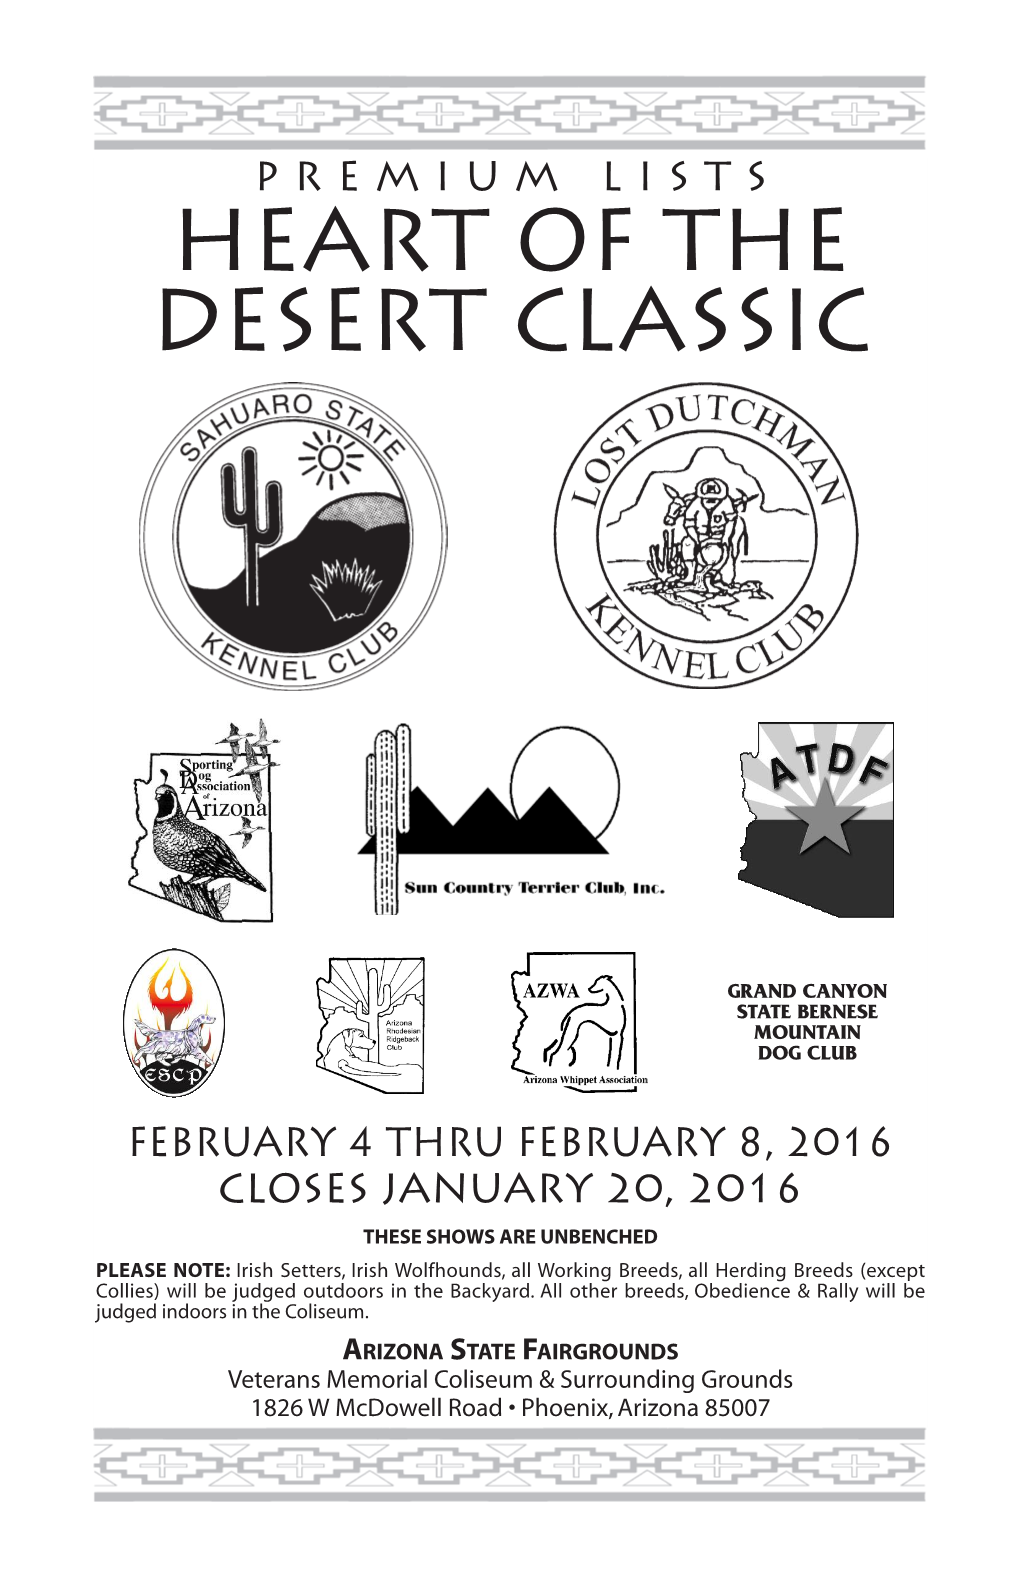 Heart of the Desert Classic